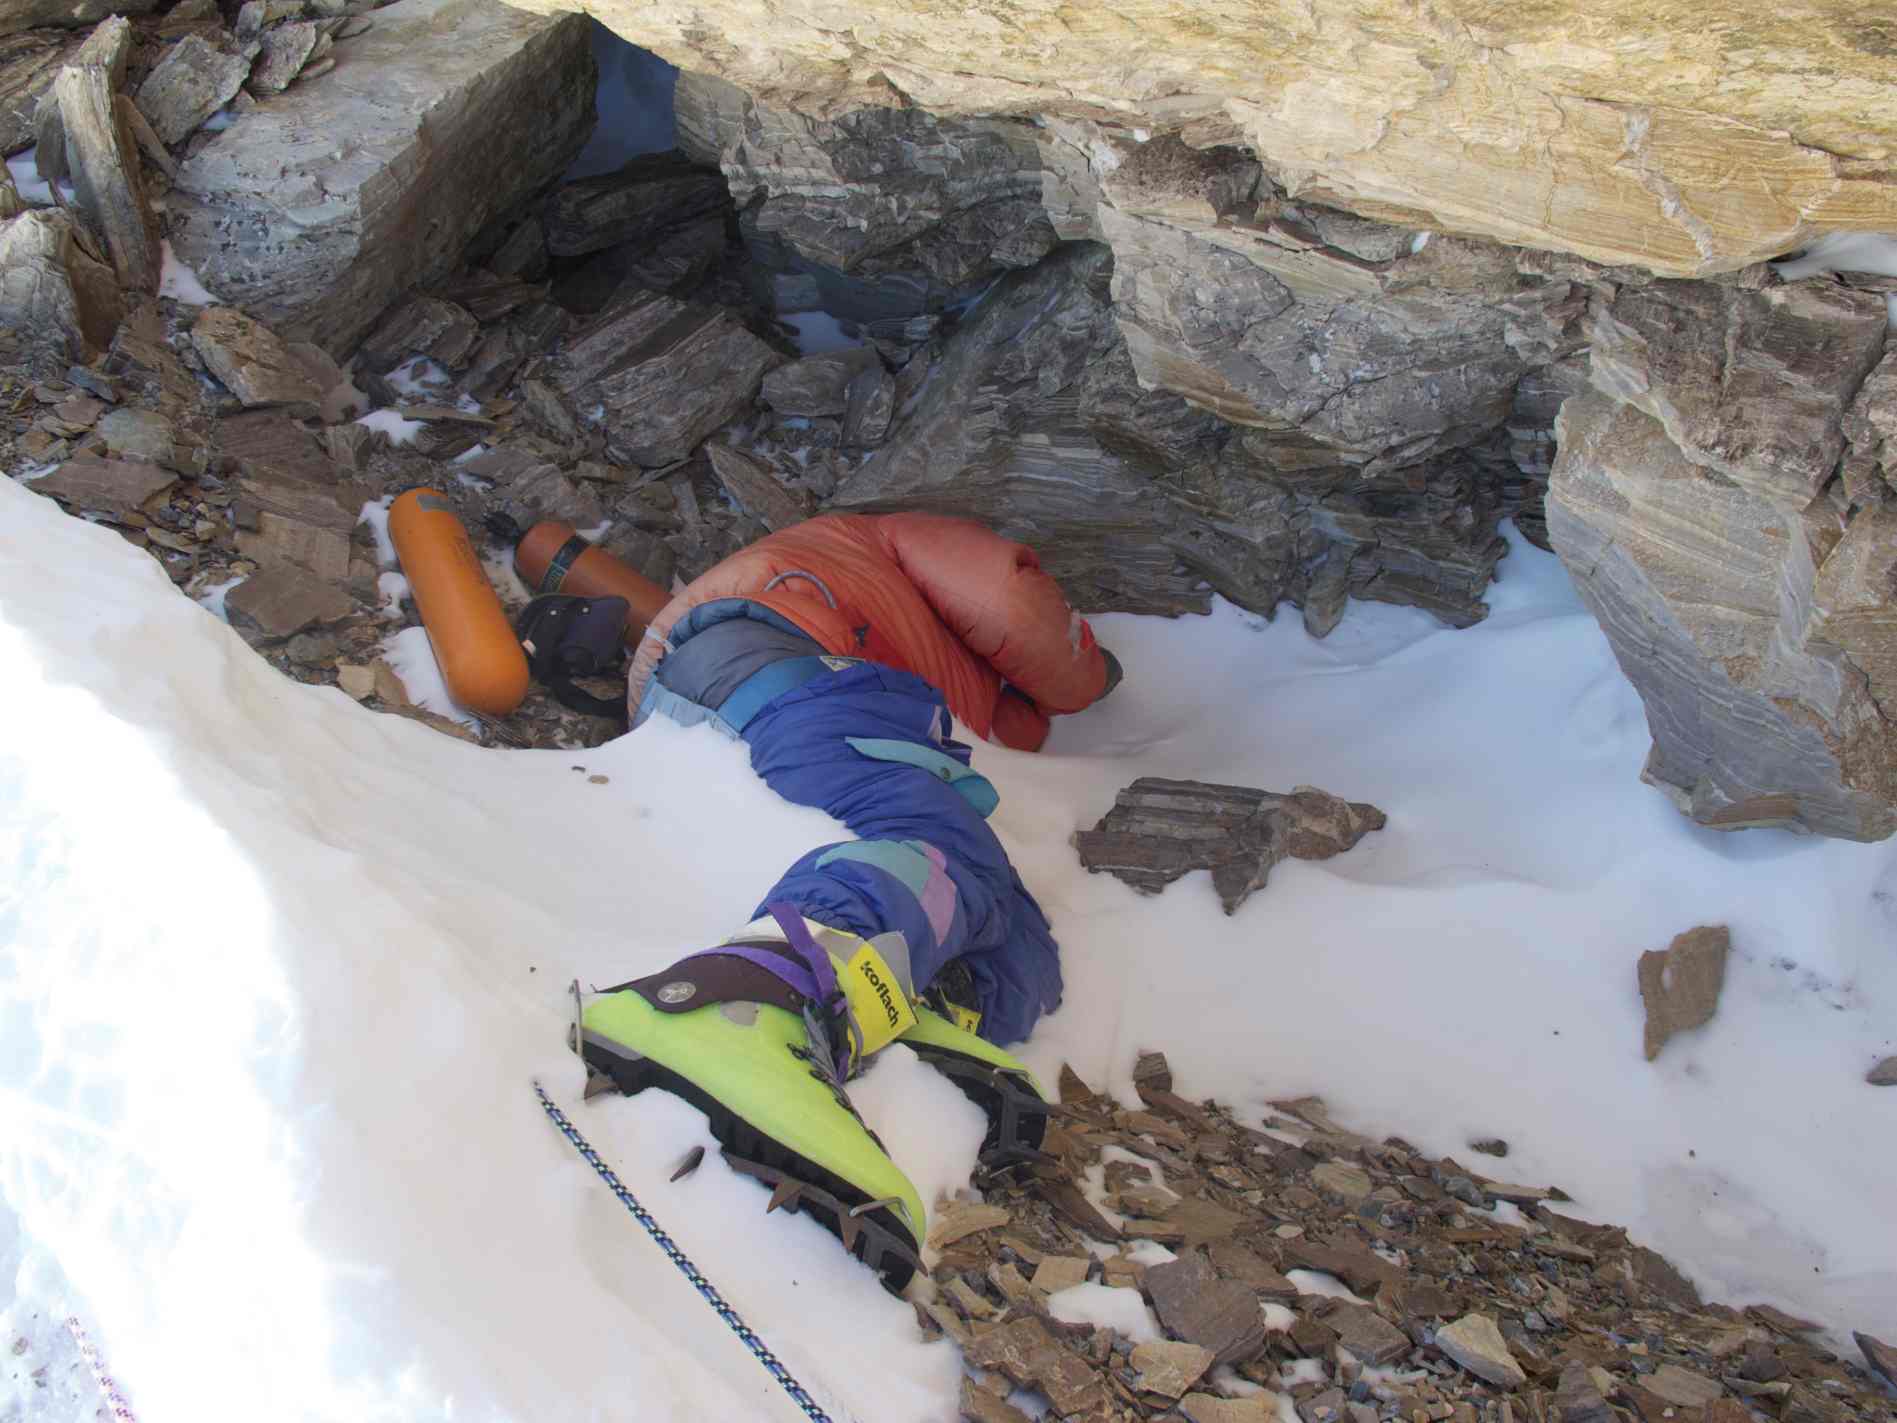 ภาพถ่าย "Green Boots" นักปีนเขาชาวอินเดียที่เสียชีวิตบนสันเขาทางตะวันออกเฉียงเหนือของเทือกเขา Mt. เอเวอเรสต์ในปี ค.ศ. 1996